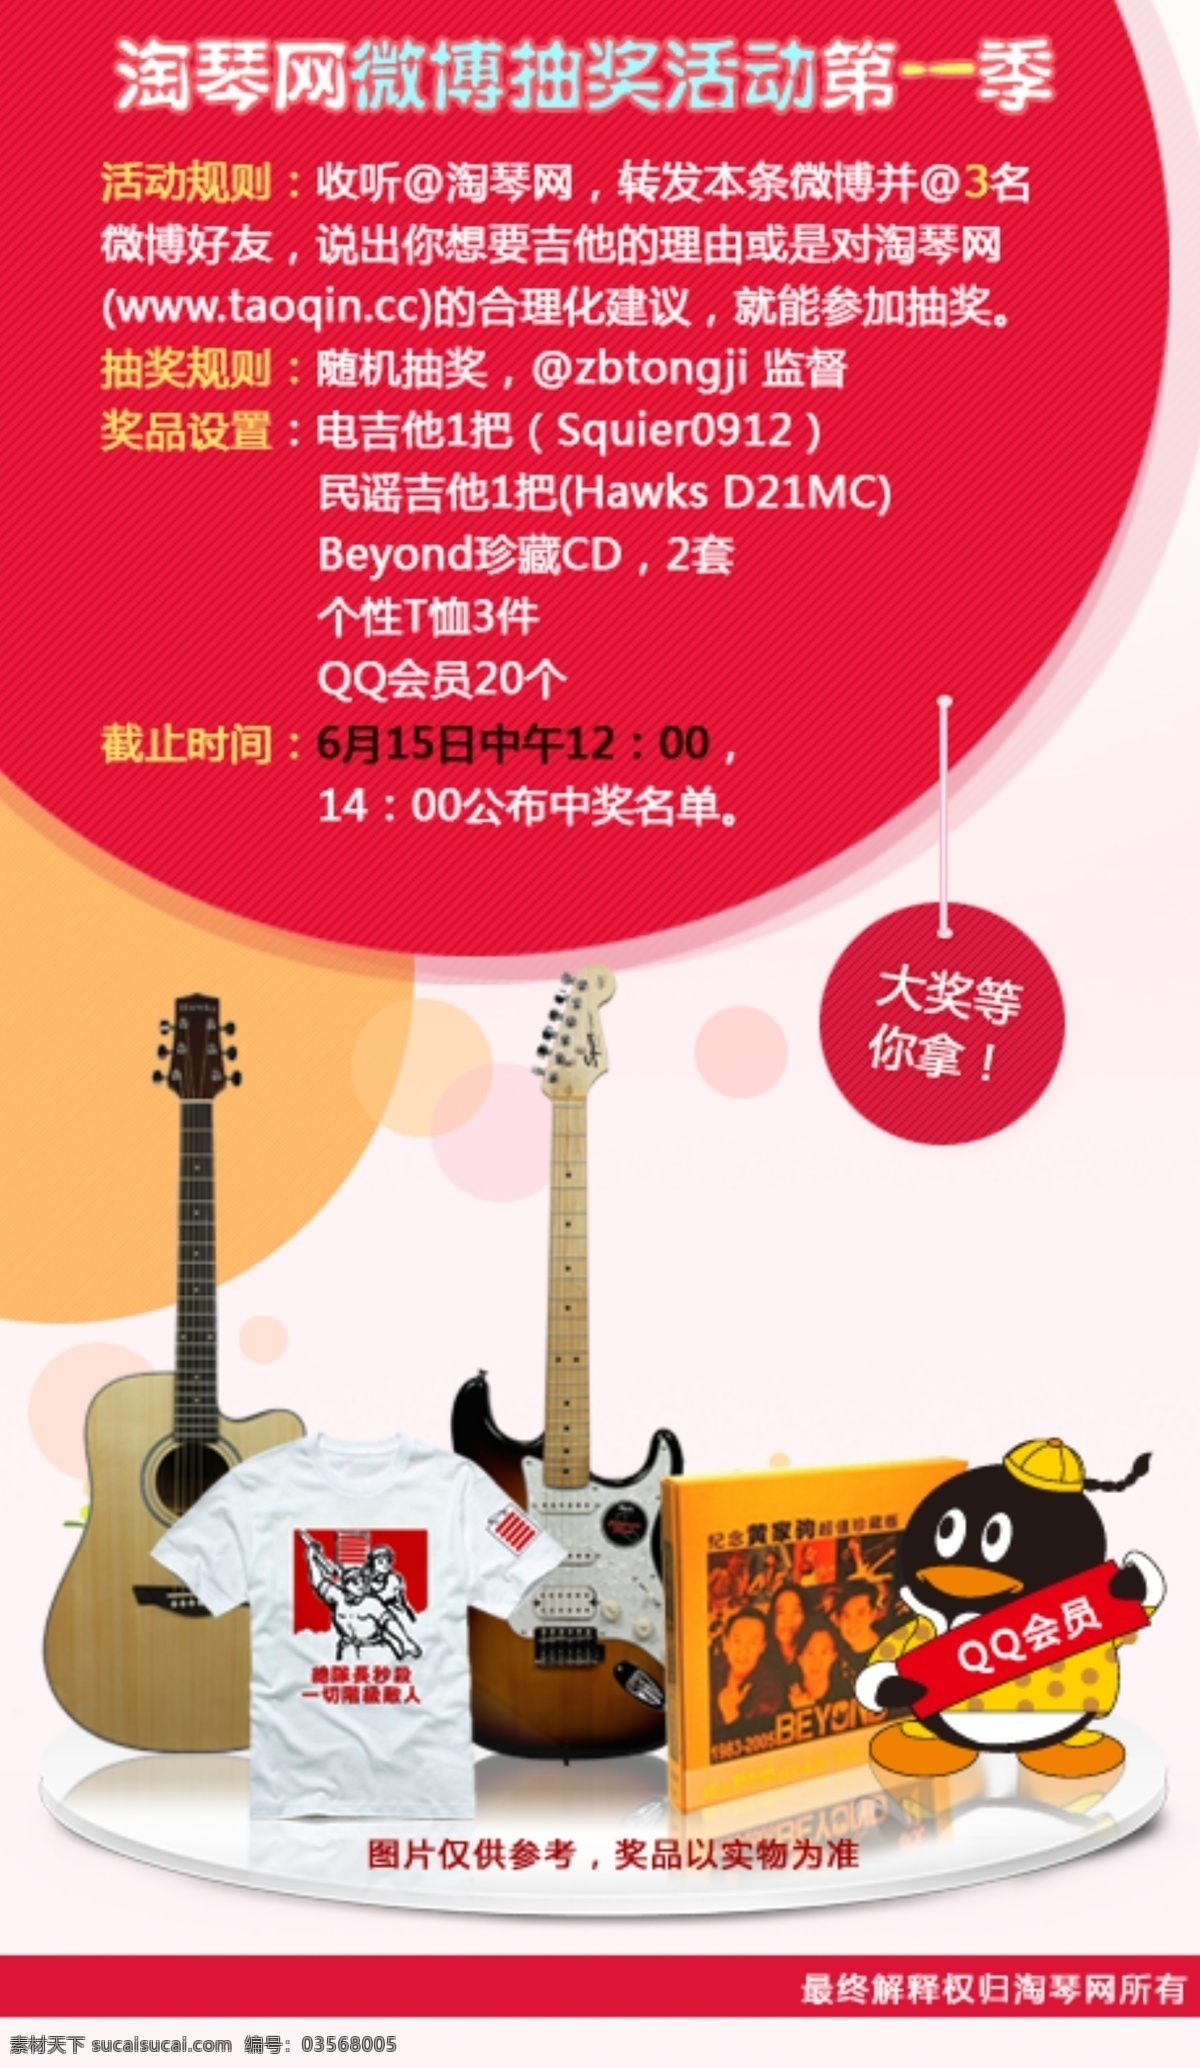 抽奖 活动 网页 抽奖活动 电吉他 吉他 网页模板 微博 源文件 中文模版 抽奖活动网页 网页素材